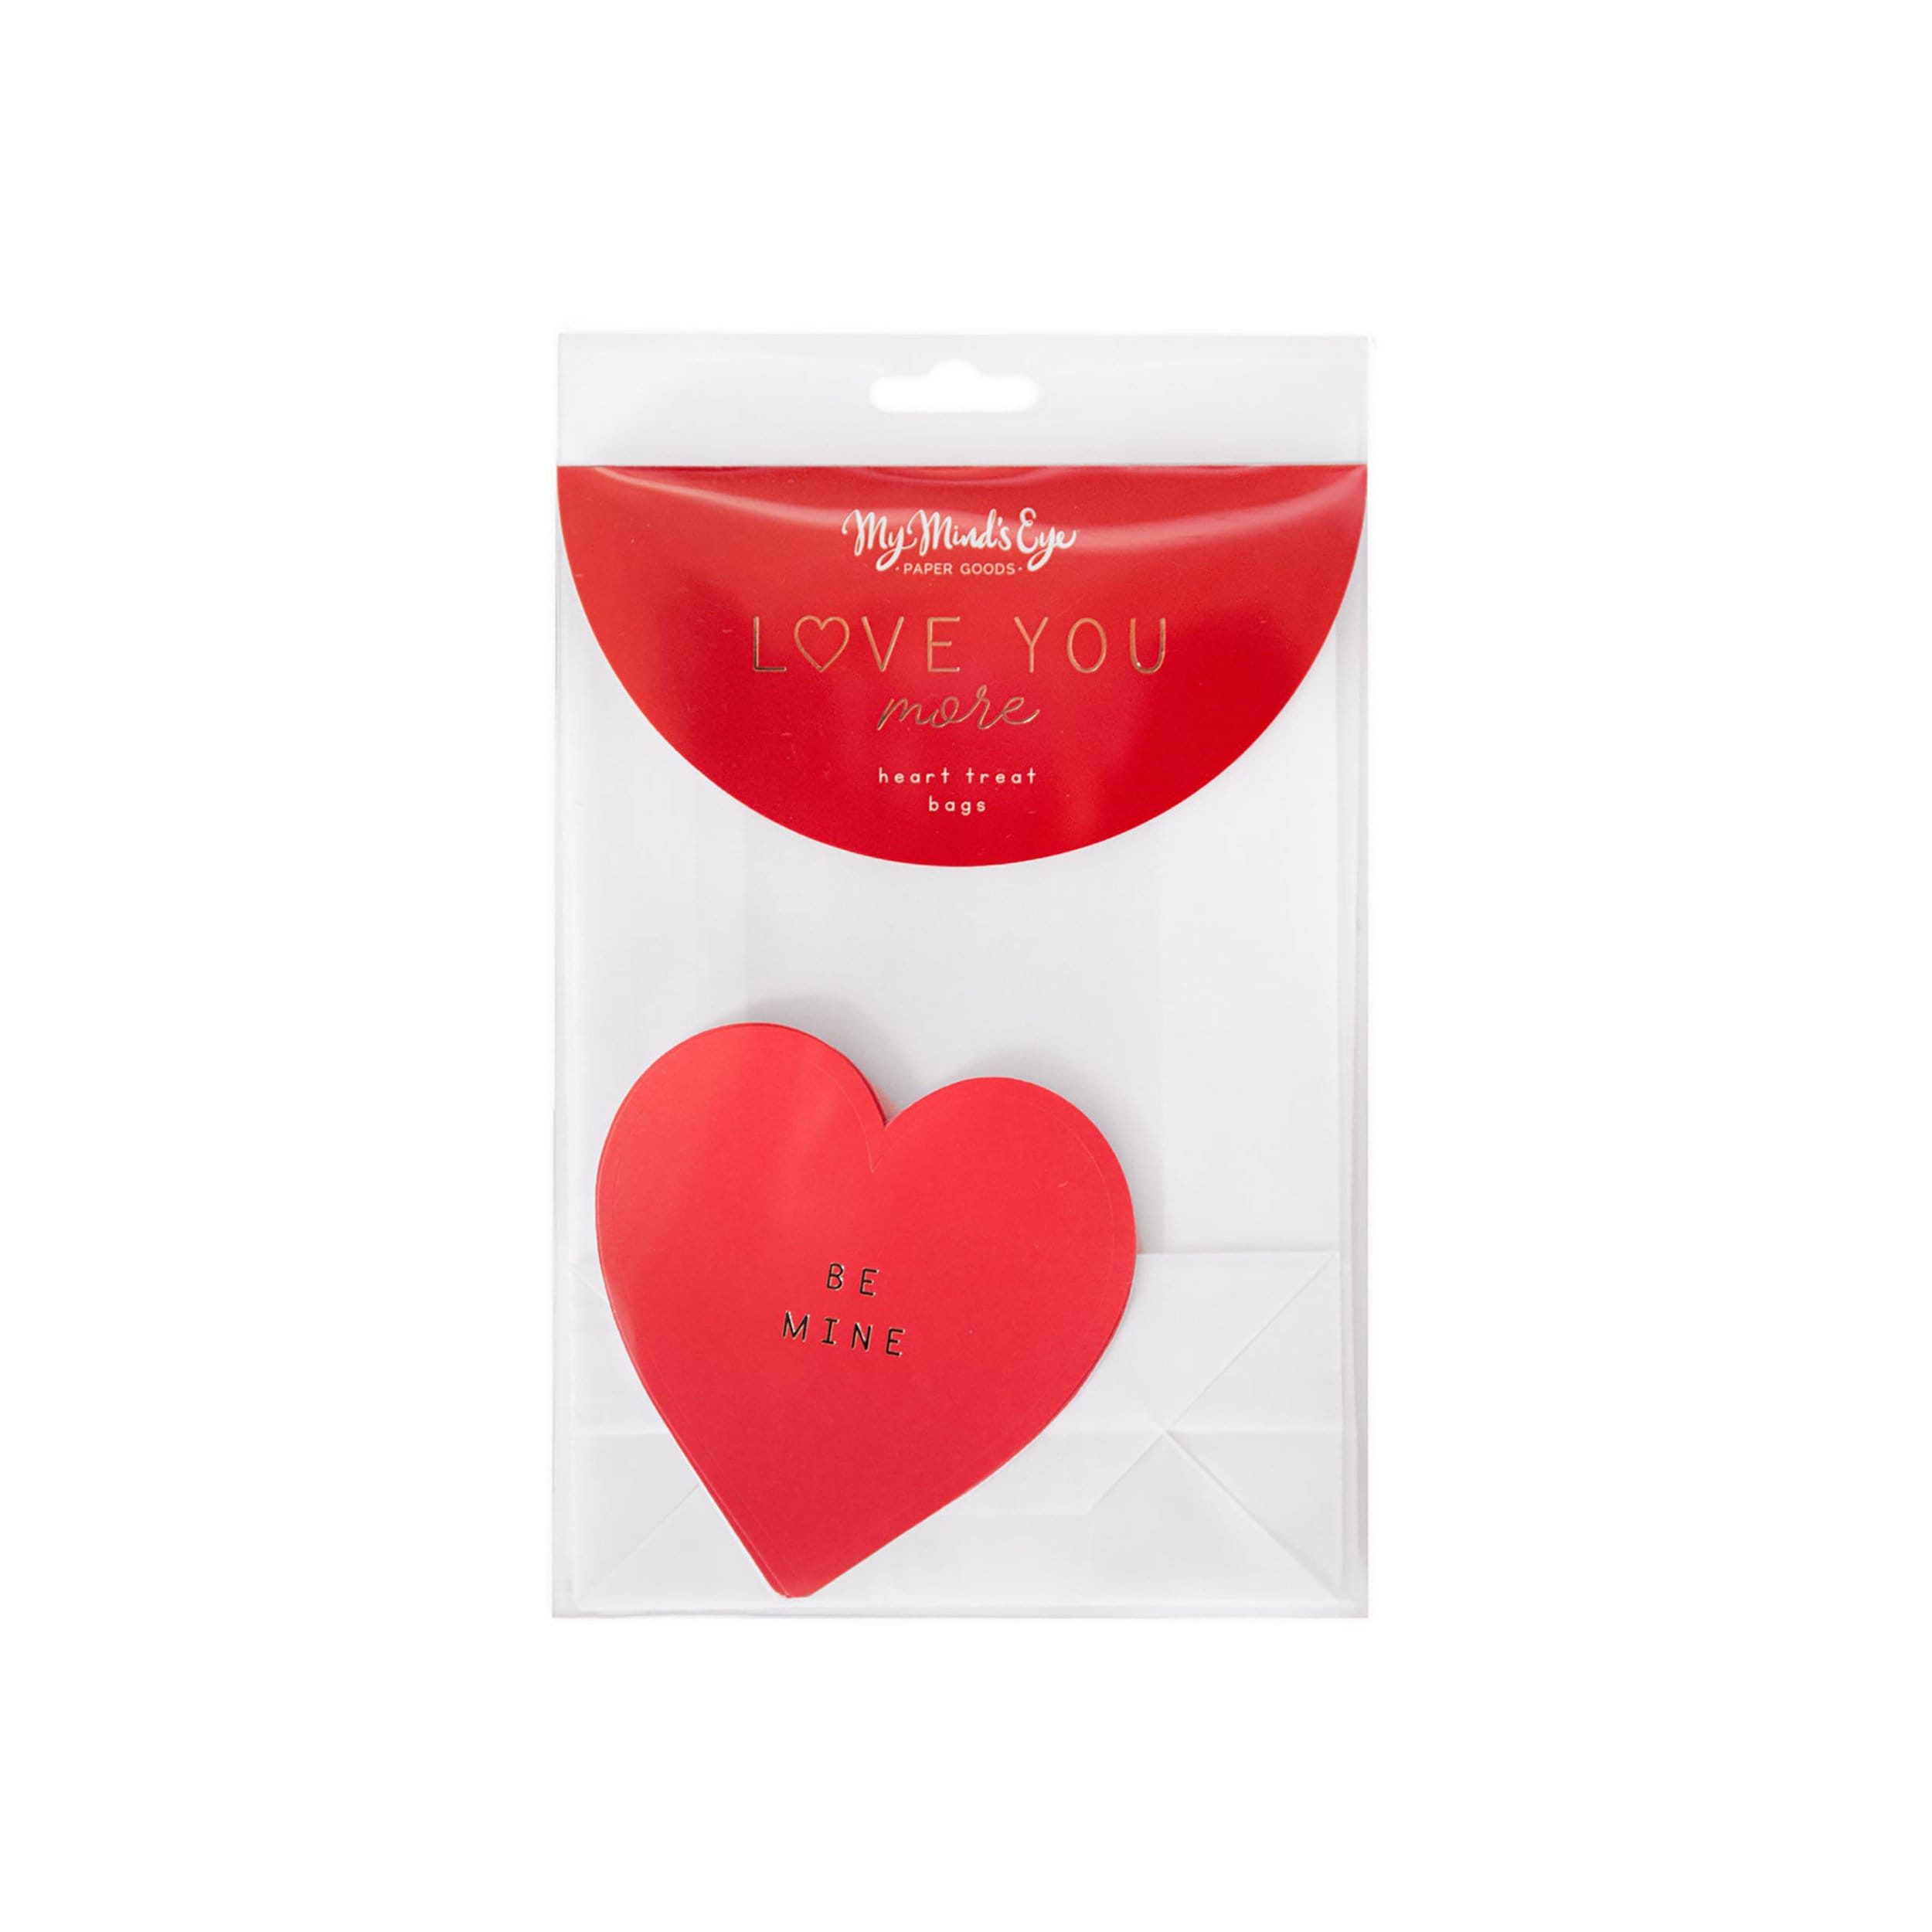 Valentine Goodie Bags | Valentine Bags - Valentines Day Gift Bags - Valentine Treat Bags - Valentines Day Goodie Bags - Valentine Exchange